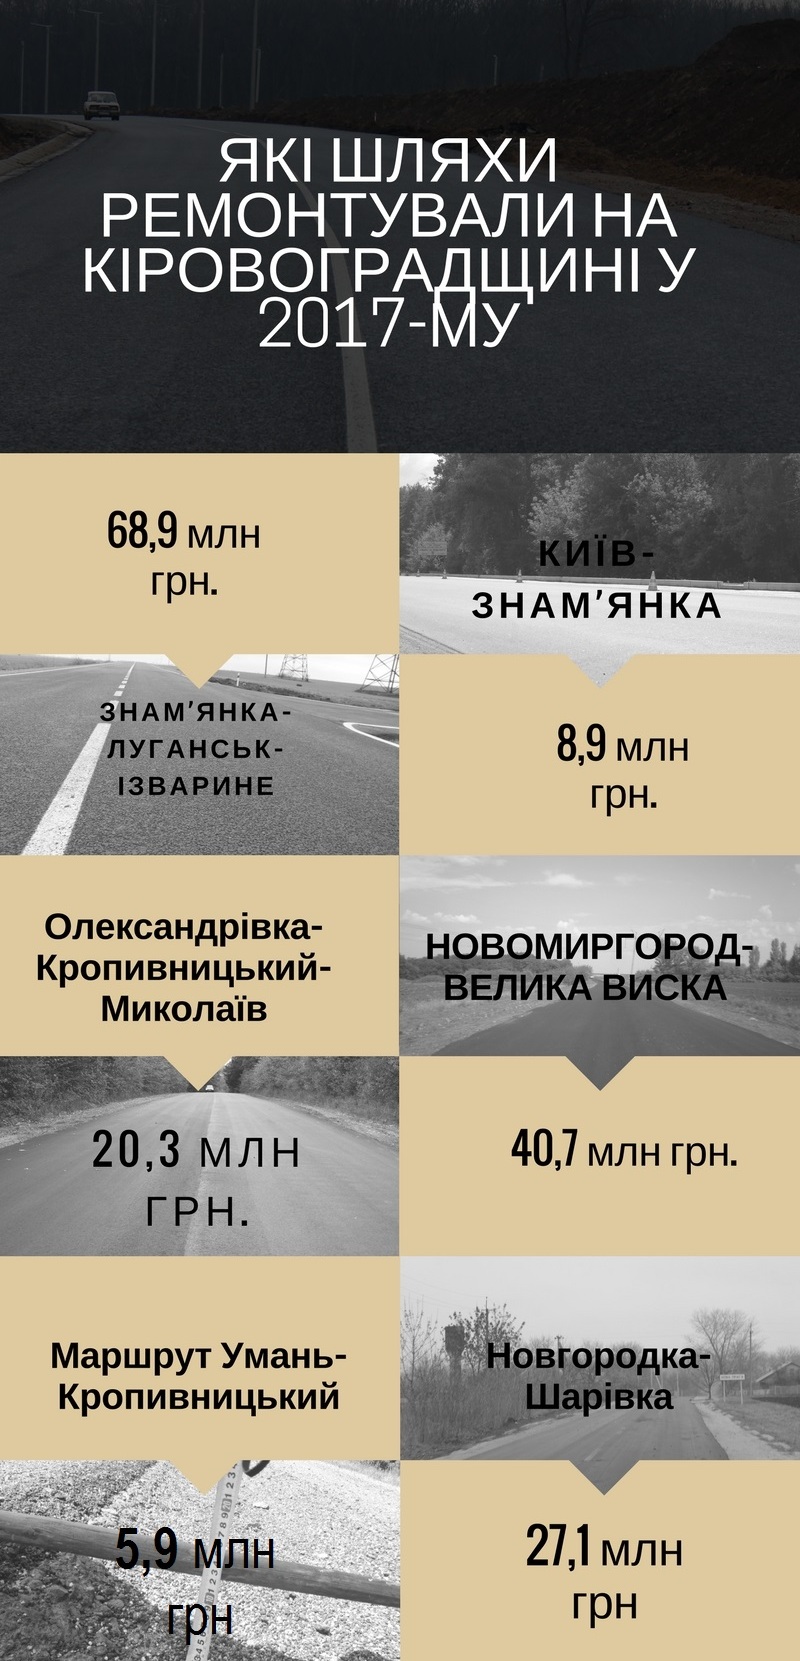 Дорожники Кіровоградщини відзвітували про ремонт шляхів за 2017 рік. ІНФОГРАФІКА